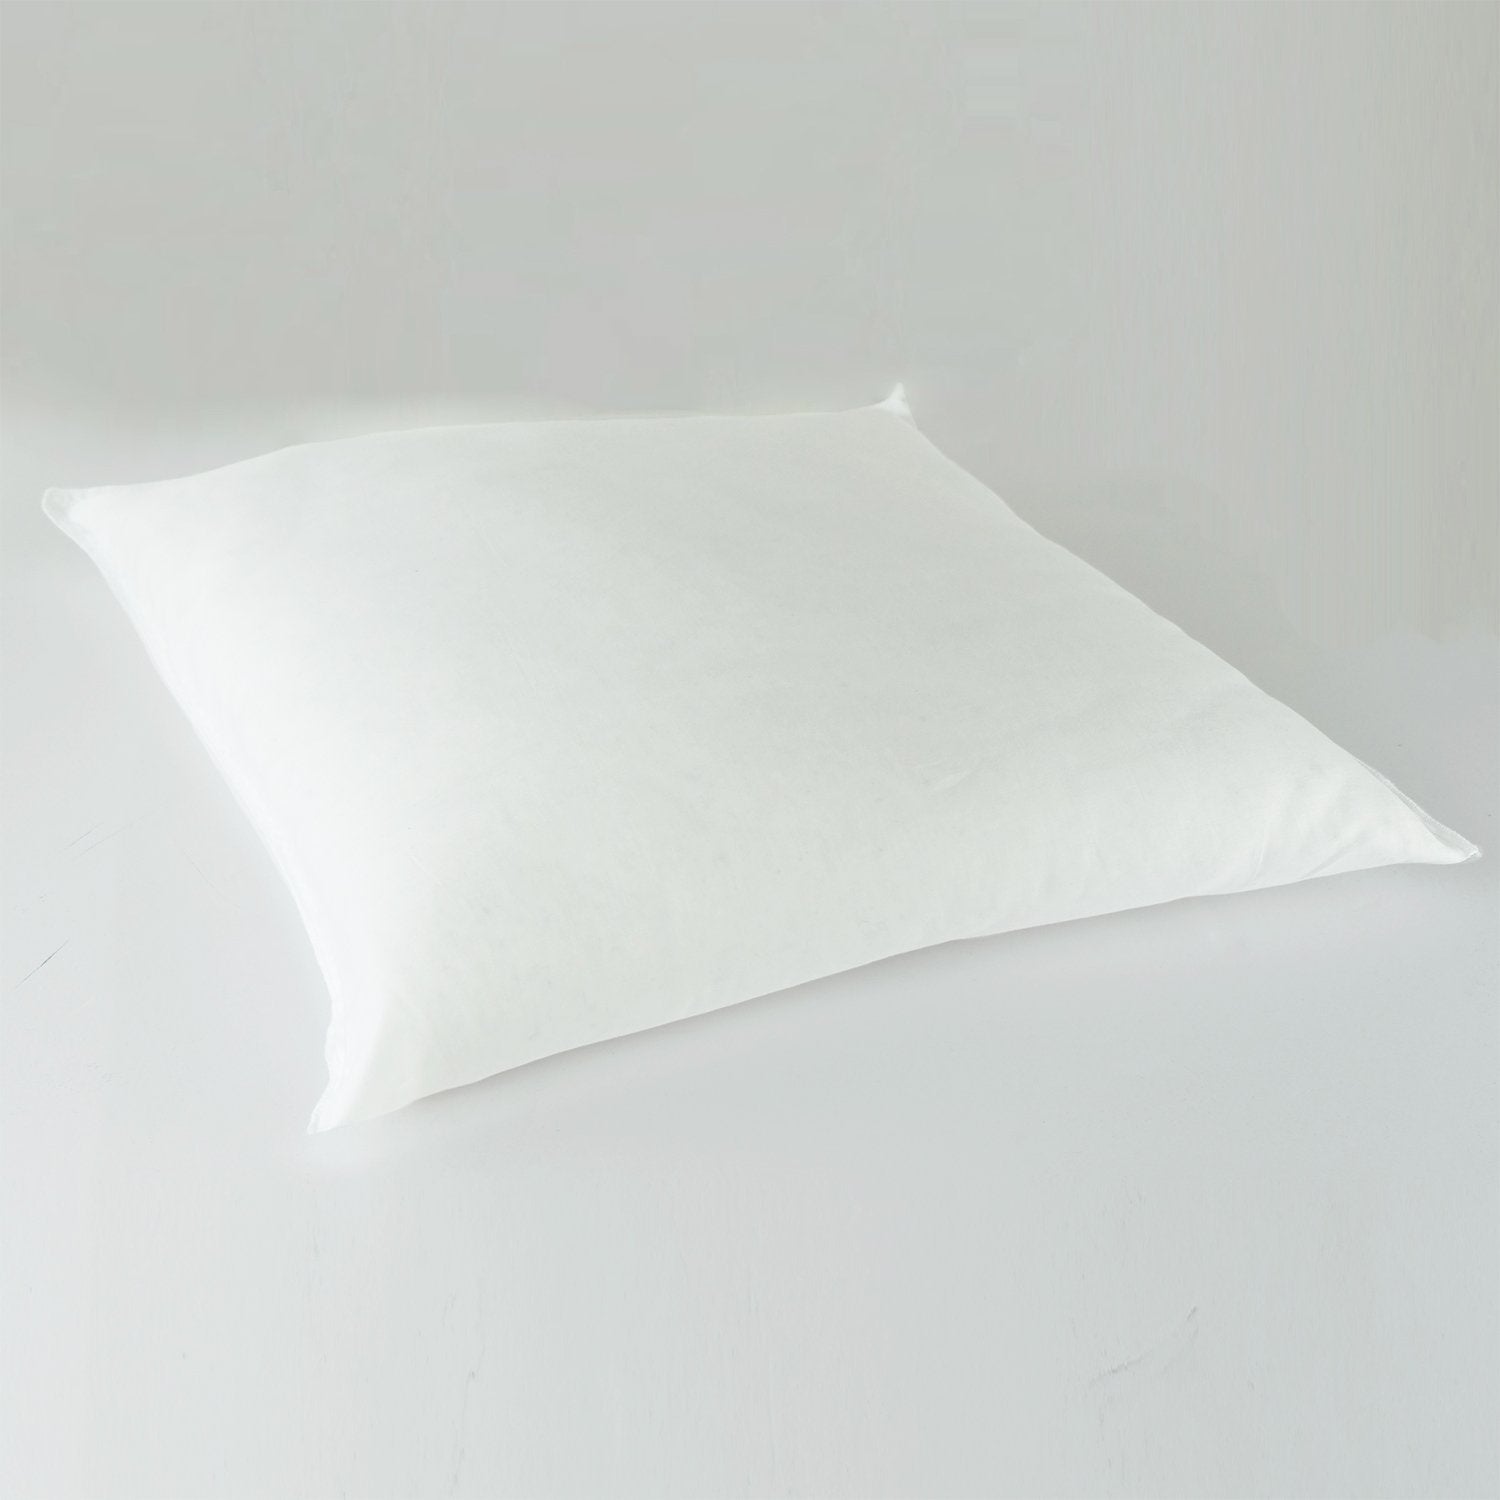 J-Life Usagi Pink Zabuton Floor Pillow_Pillows & Shams_Zabuton Floor Pillows_100% Cotton_Reversible